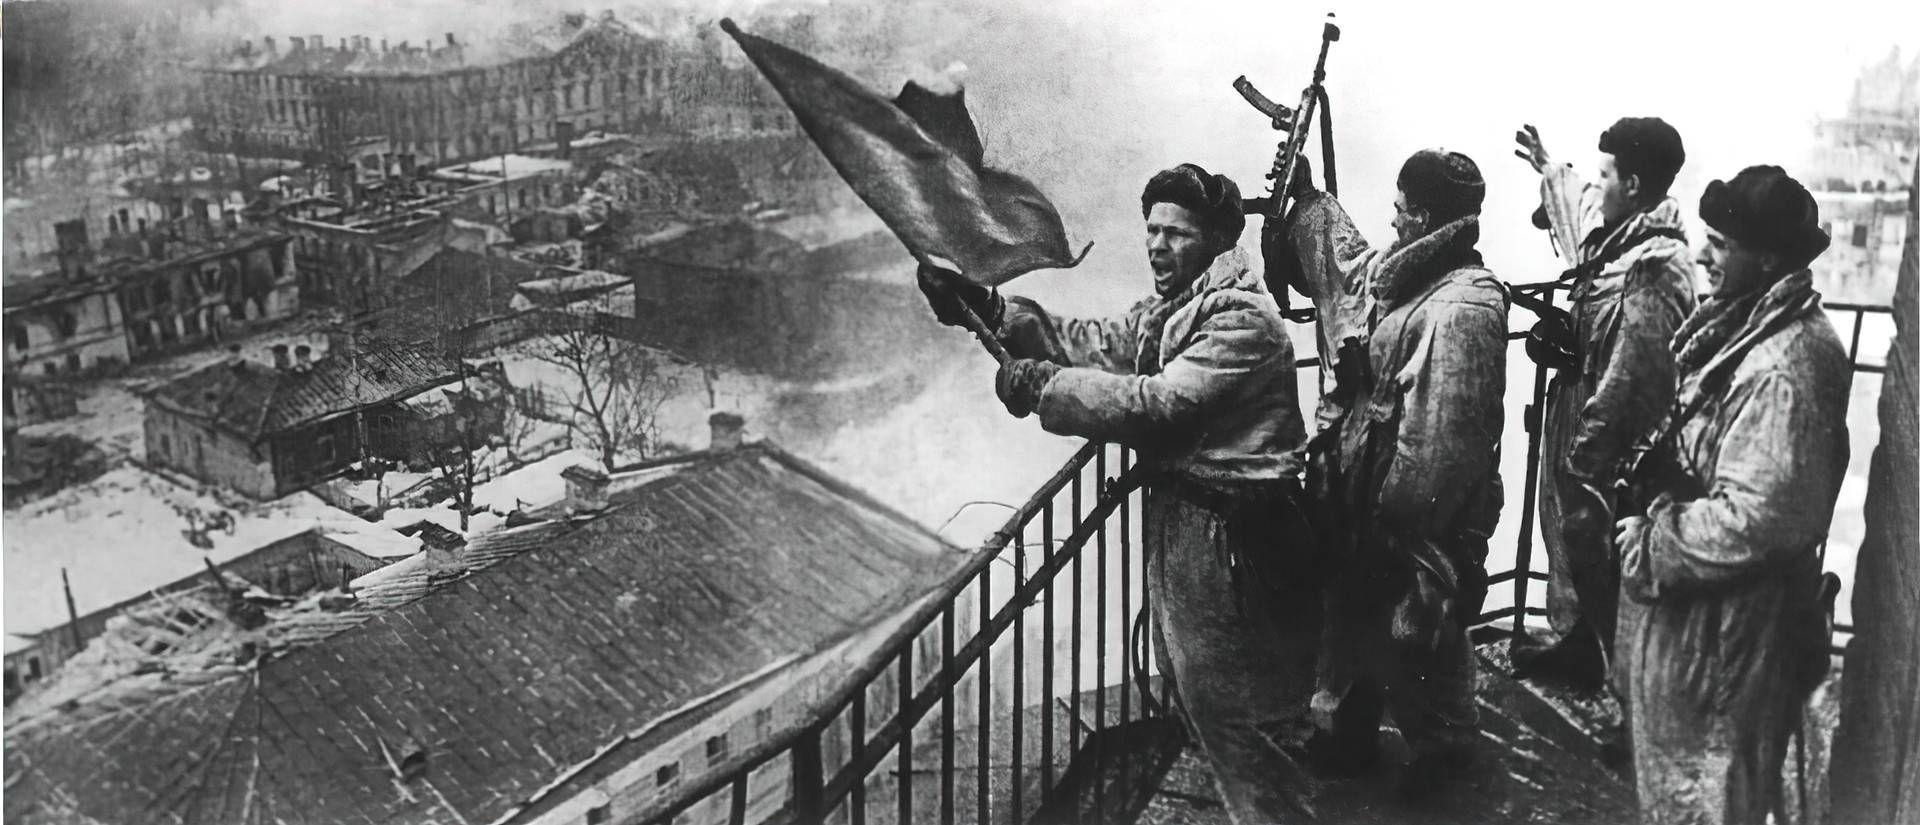 Старшина П. Х. Силин поднимает Красный флаг на пожарной каланче в освобожденной Гатчине. 1944